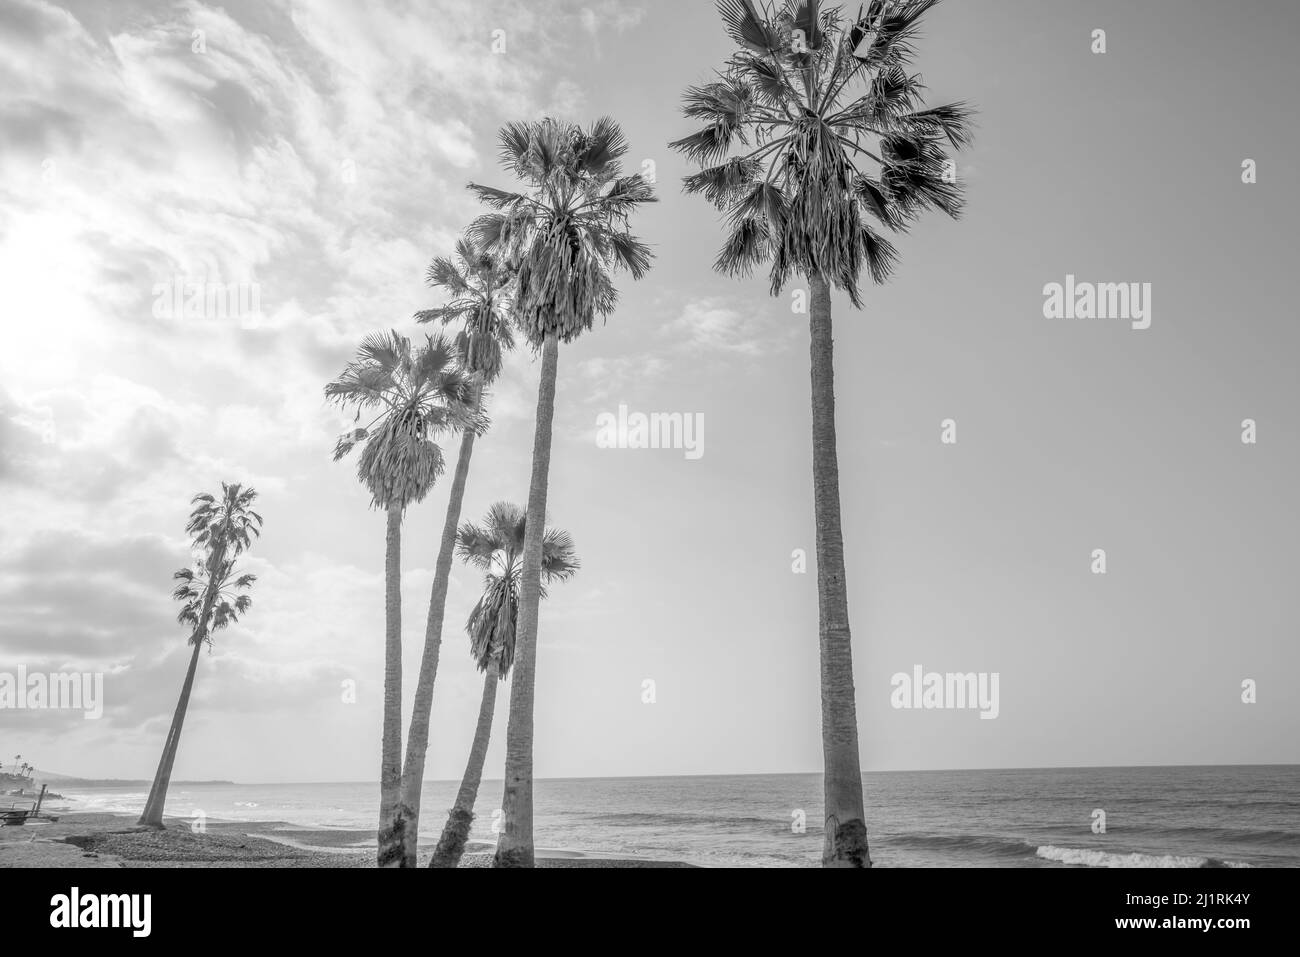 Palmiers de la plage d'État de Doheny. Dana point, Californie, États-Unis. Banque D'Images